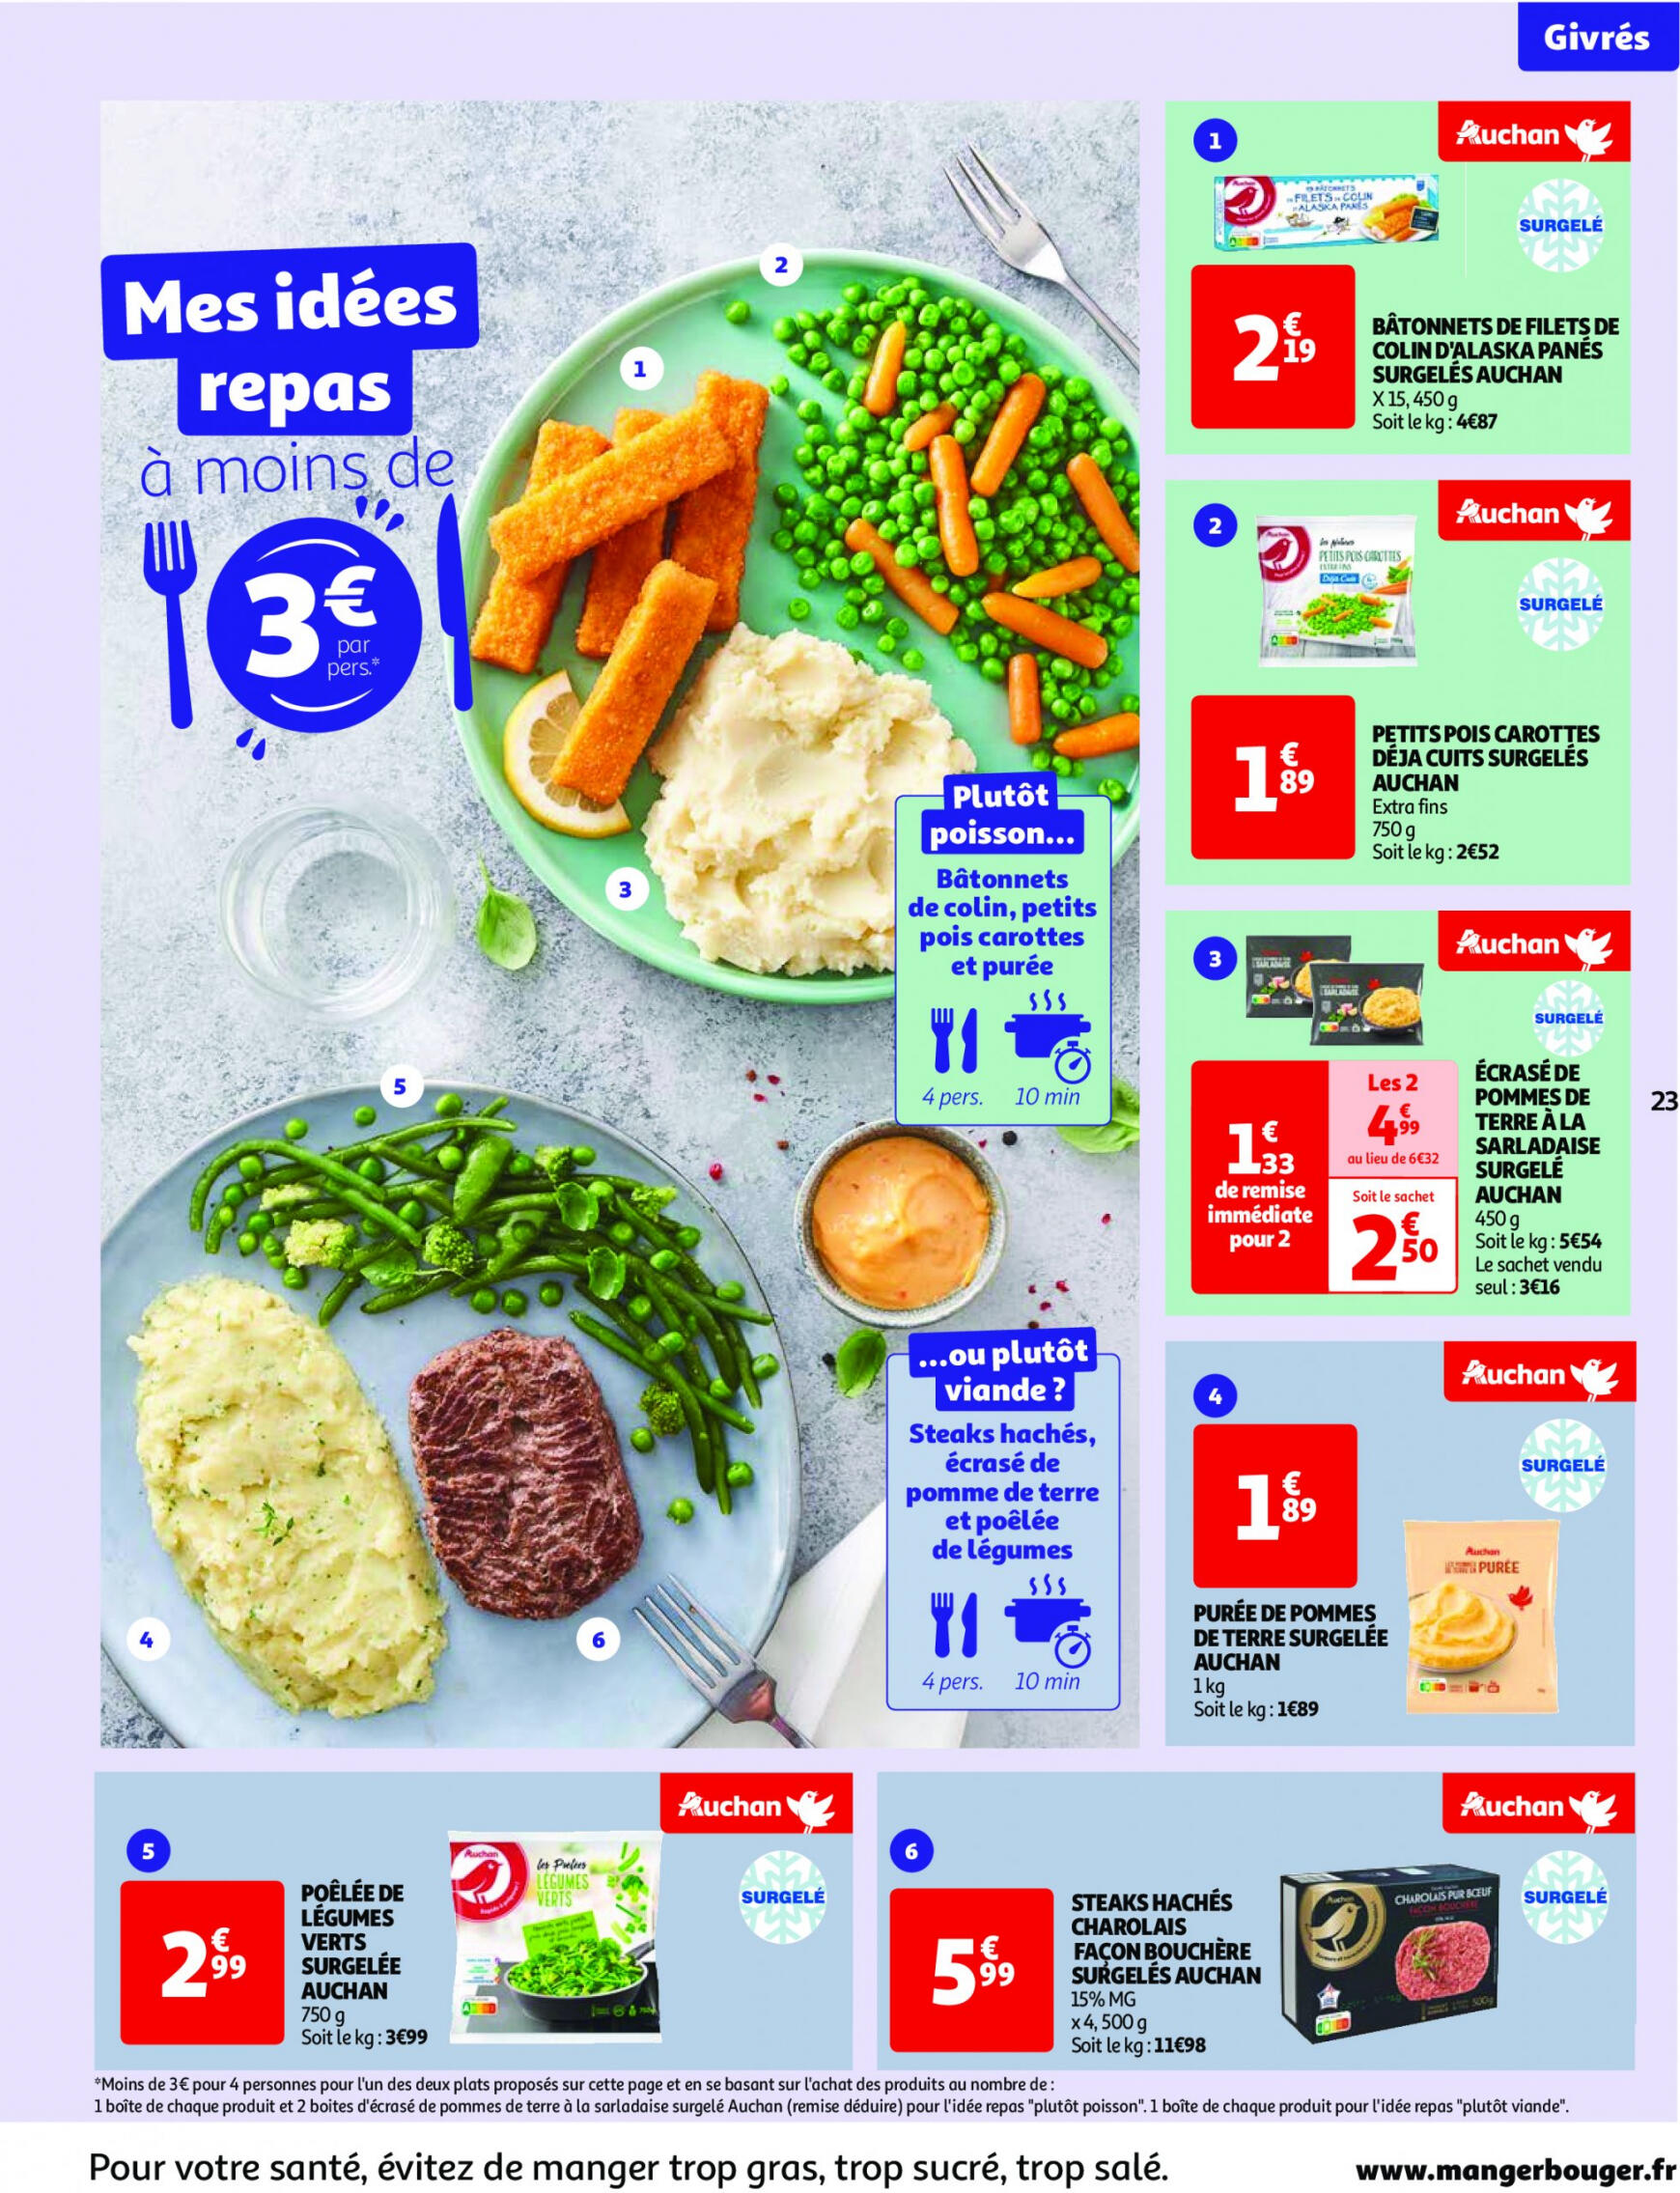 auchan - Auchan - Nos surgelés ont tout bon folder huidig 14.05. - 21.05. - page: 23